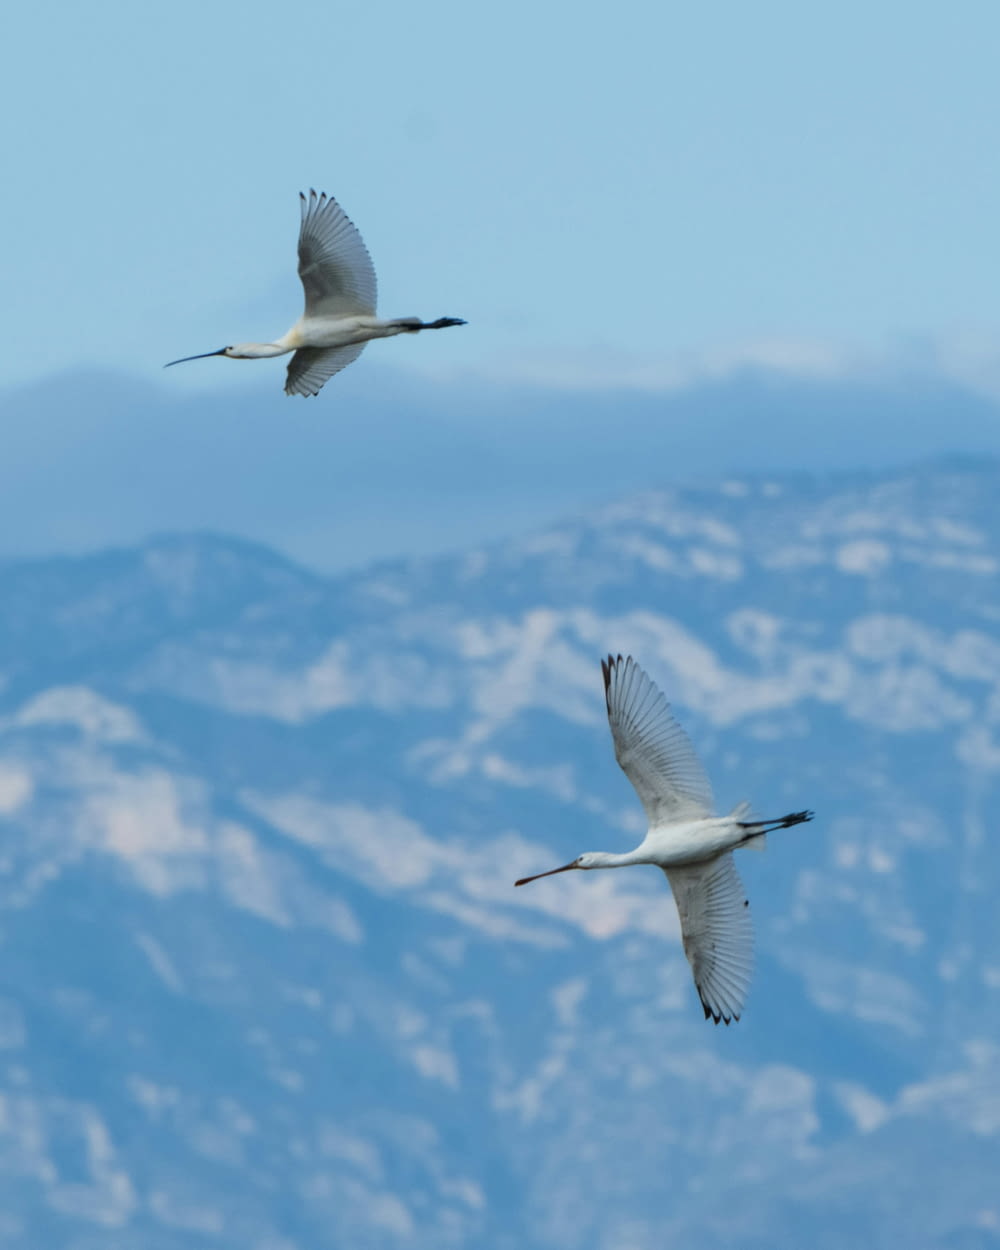 산맥 위를 날아다니는 흰 새 두 마리